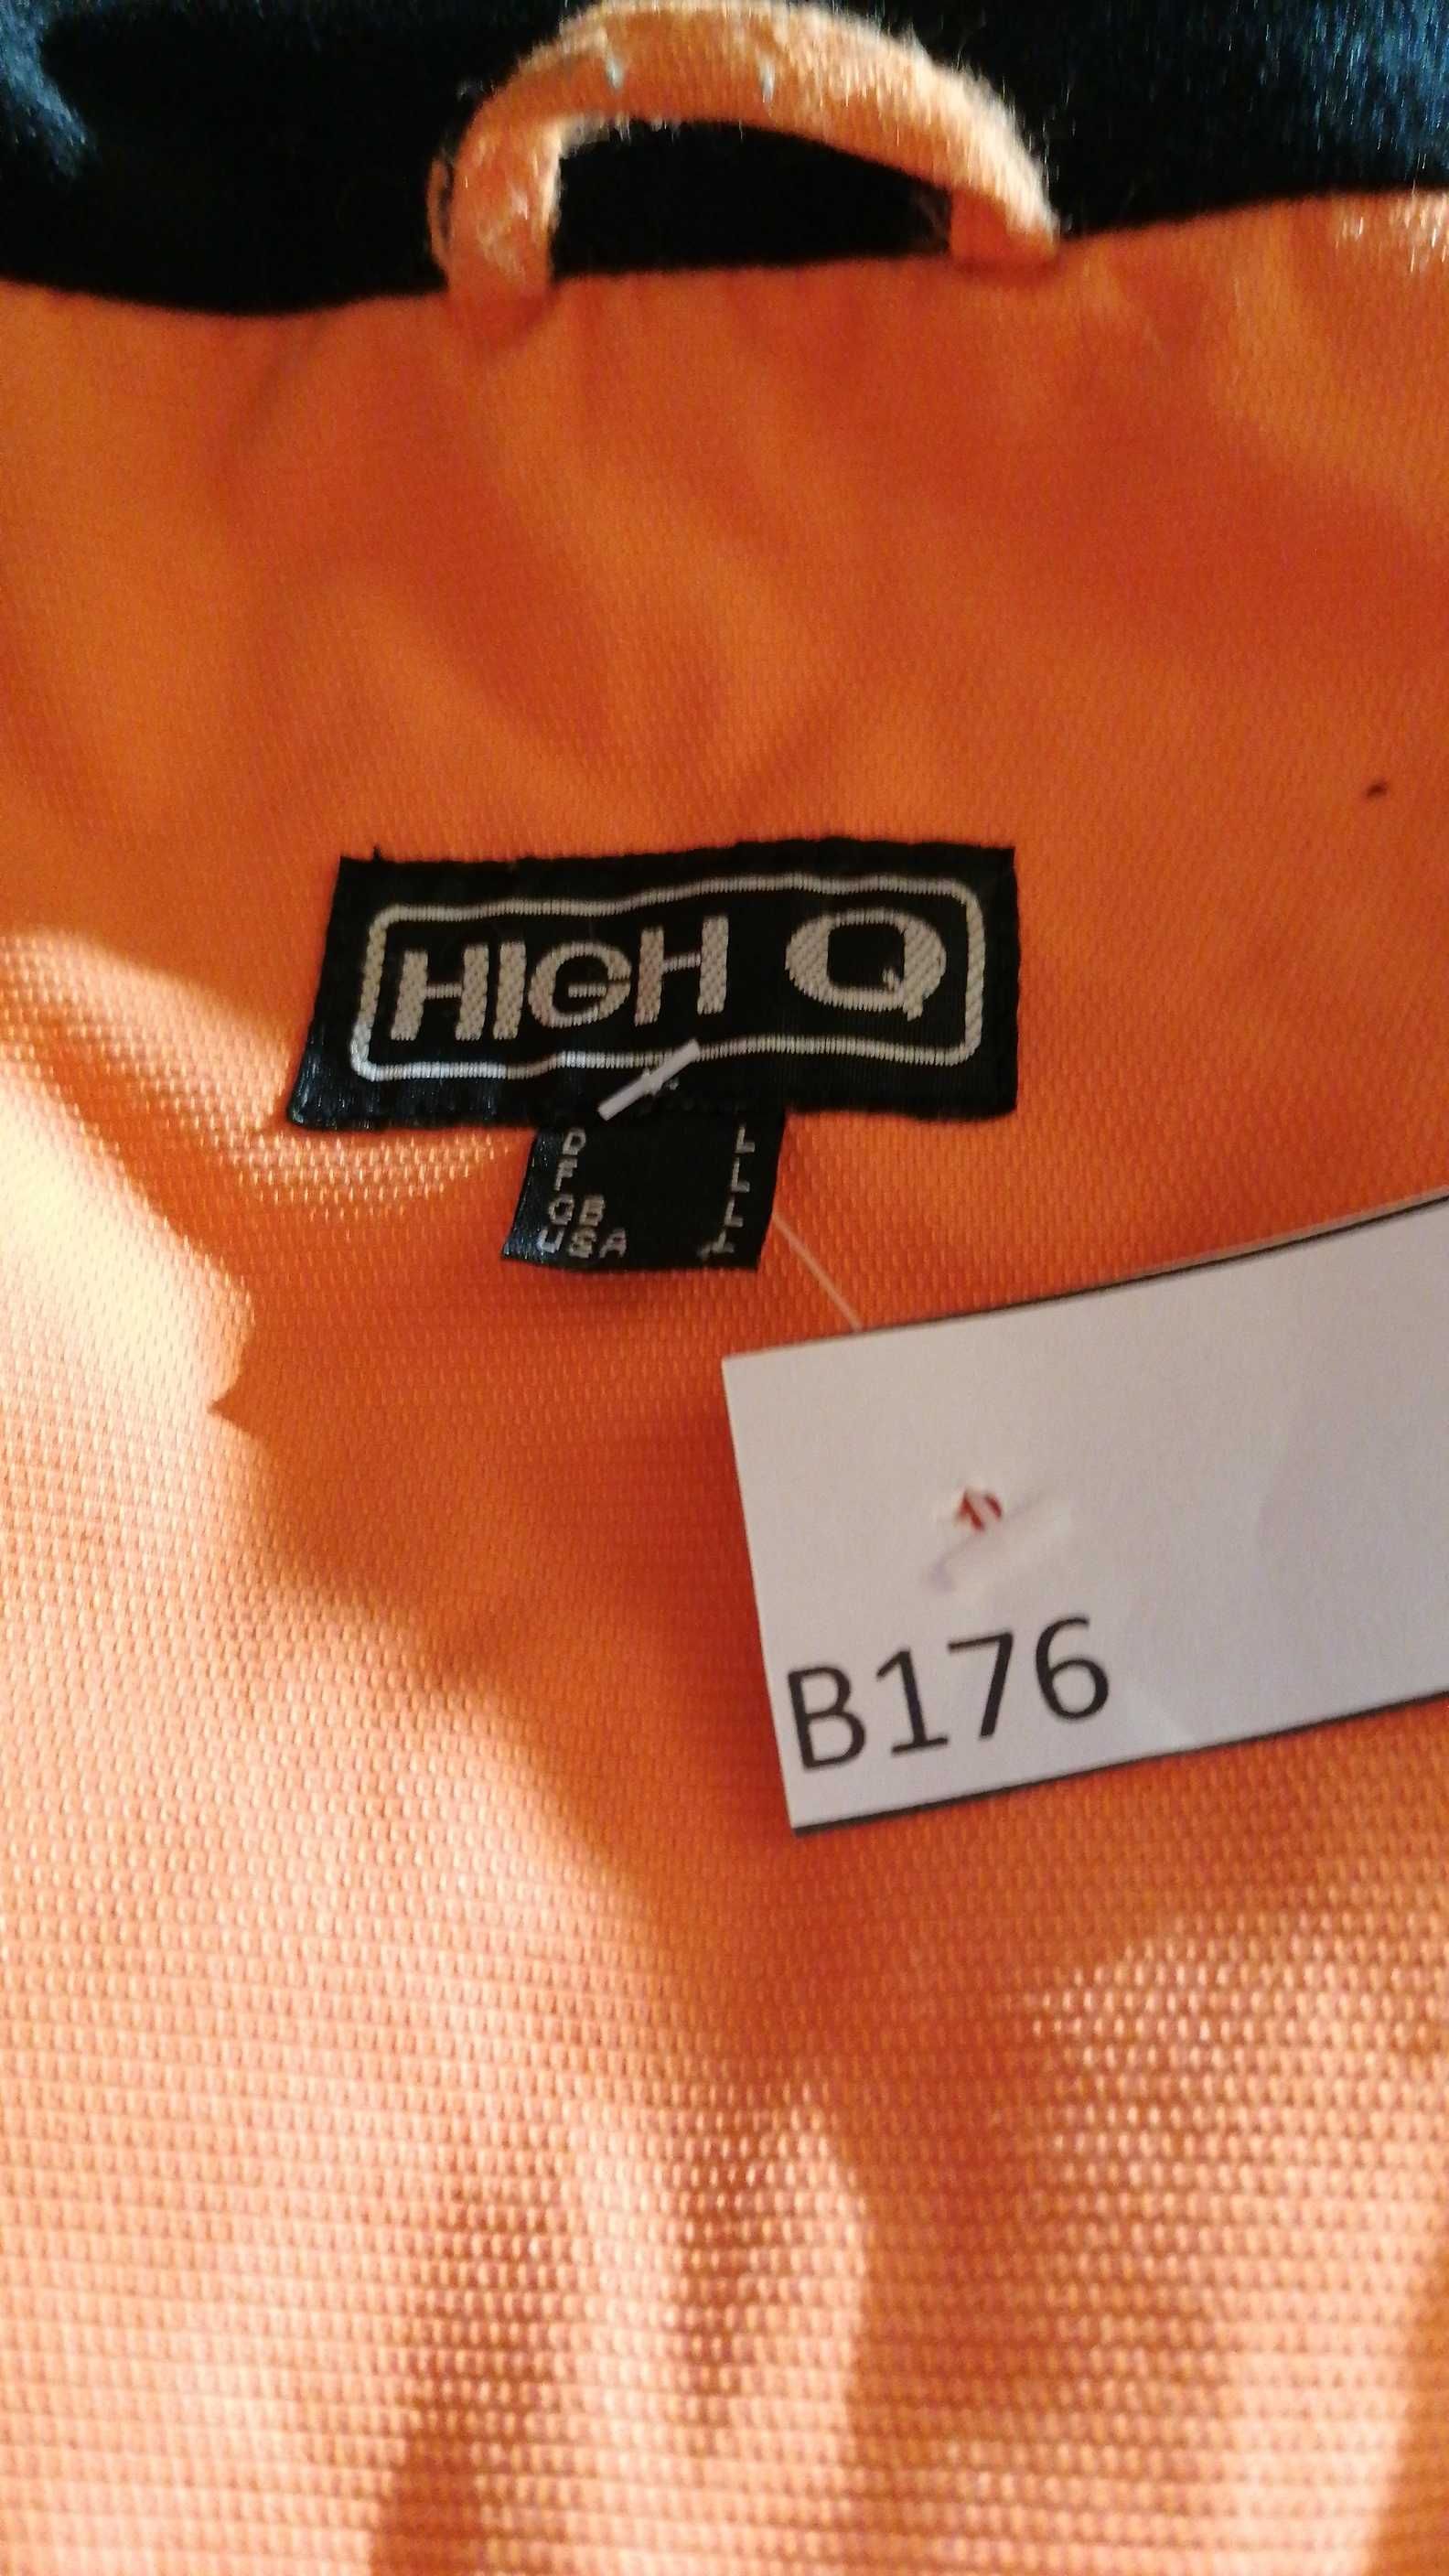 B/176  Kurtka narciarska High Q  r. L